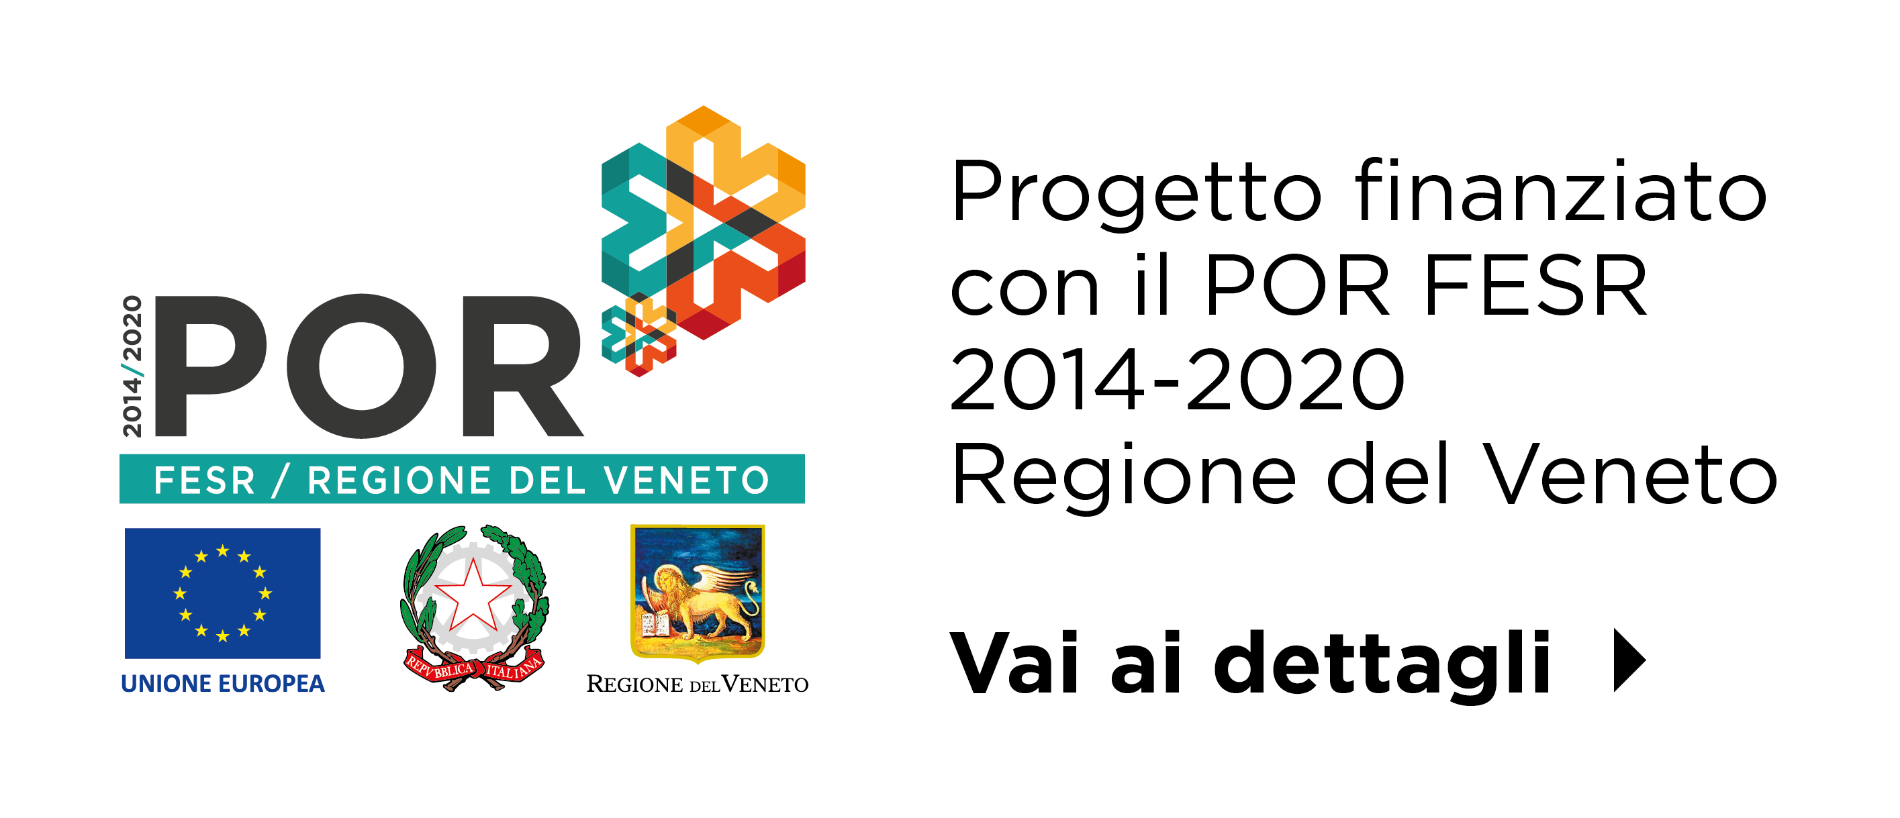 POR-FESR 2014-2020